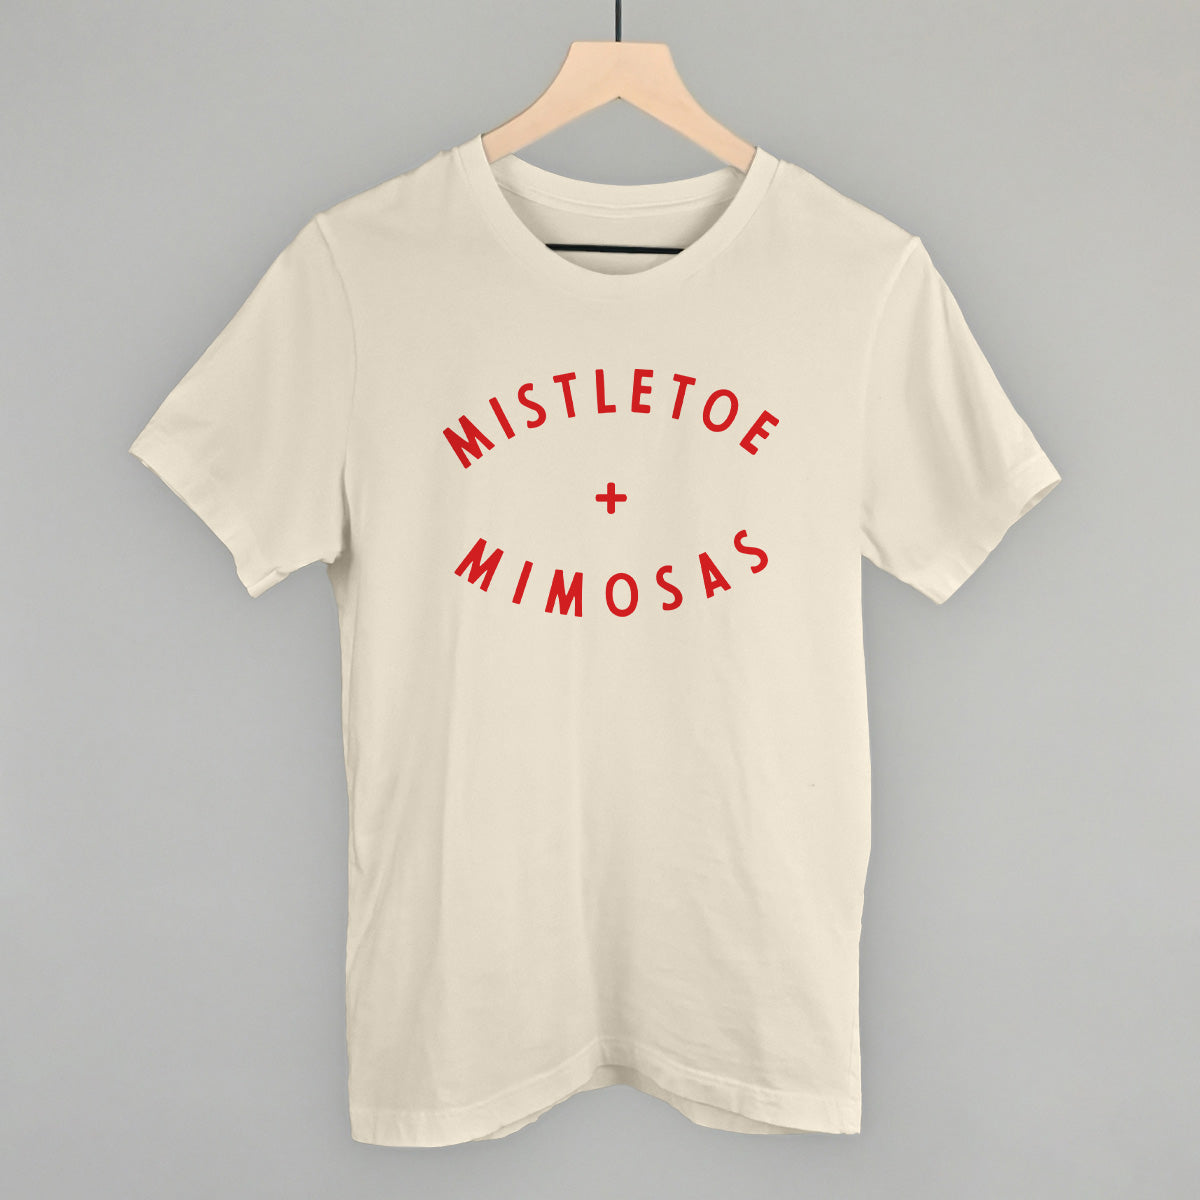 Mistletoe + Mimosas